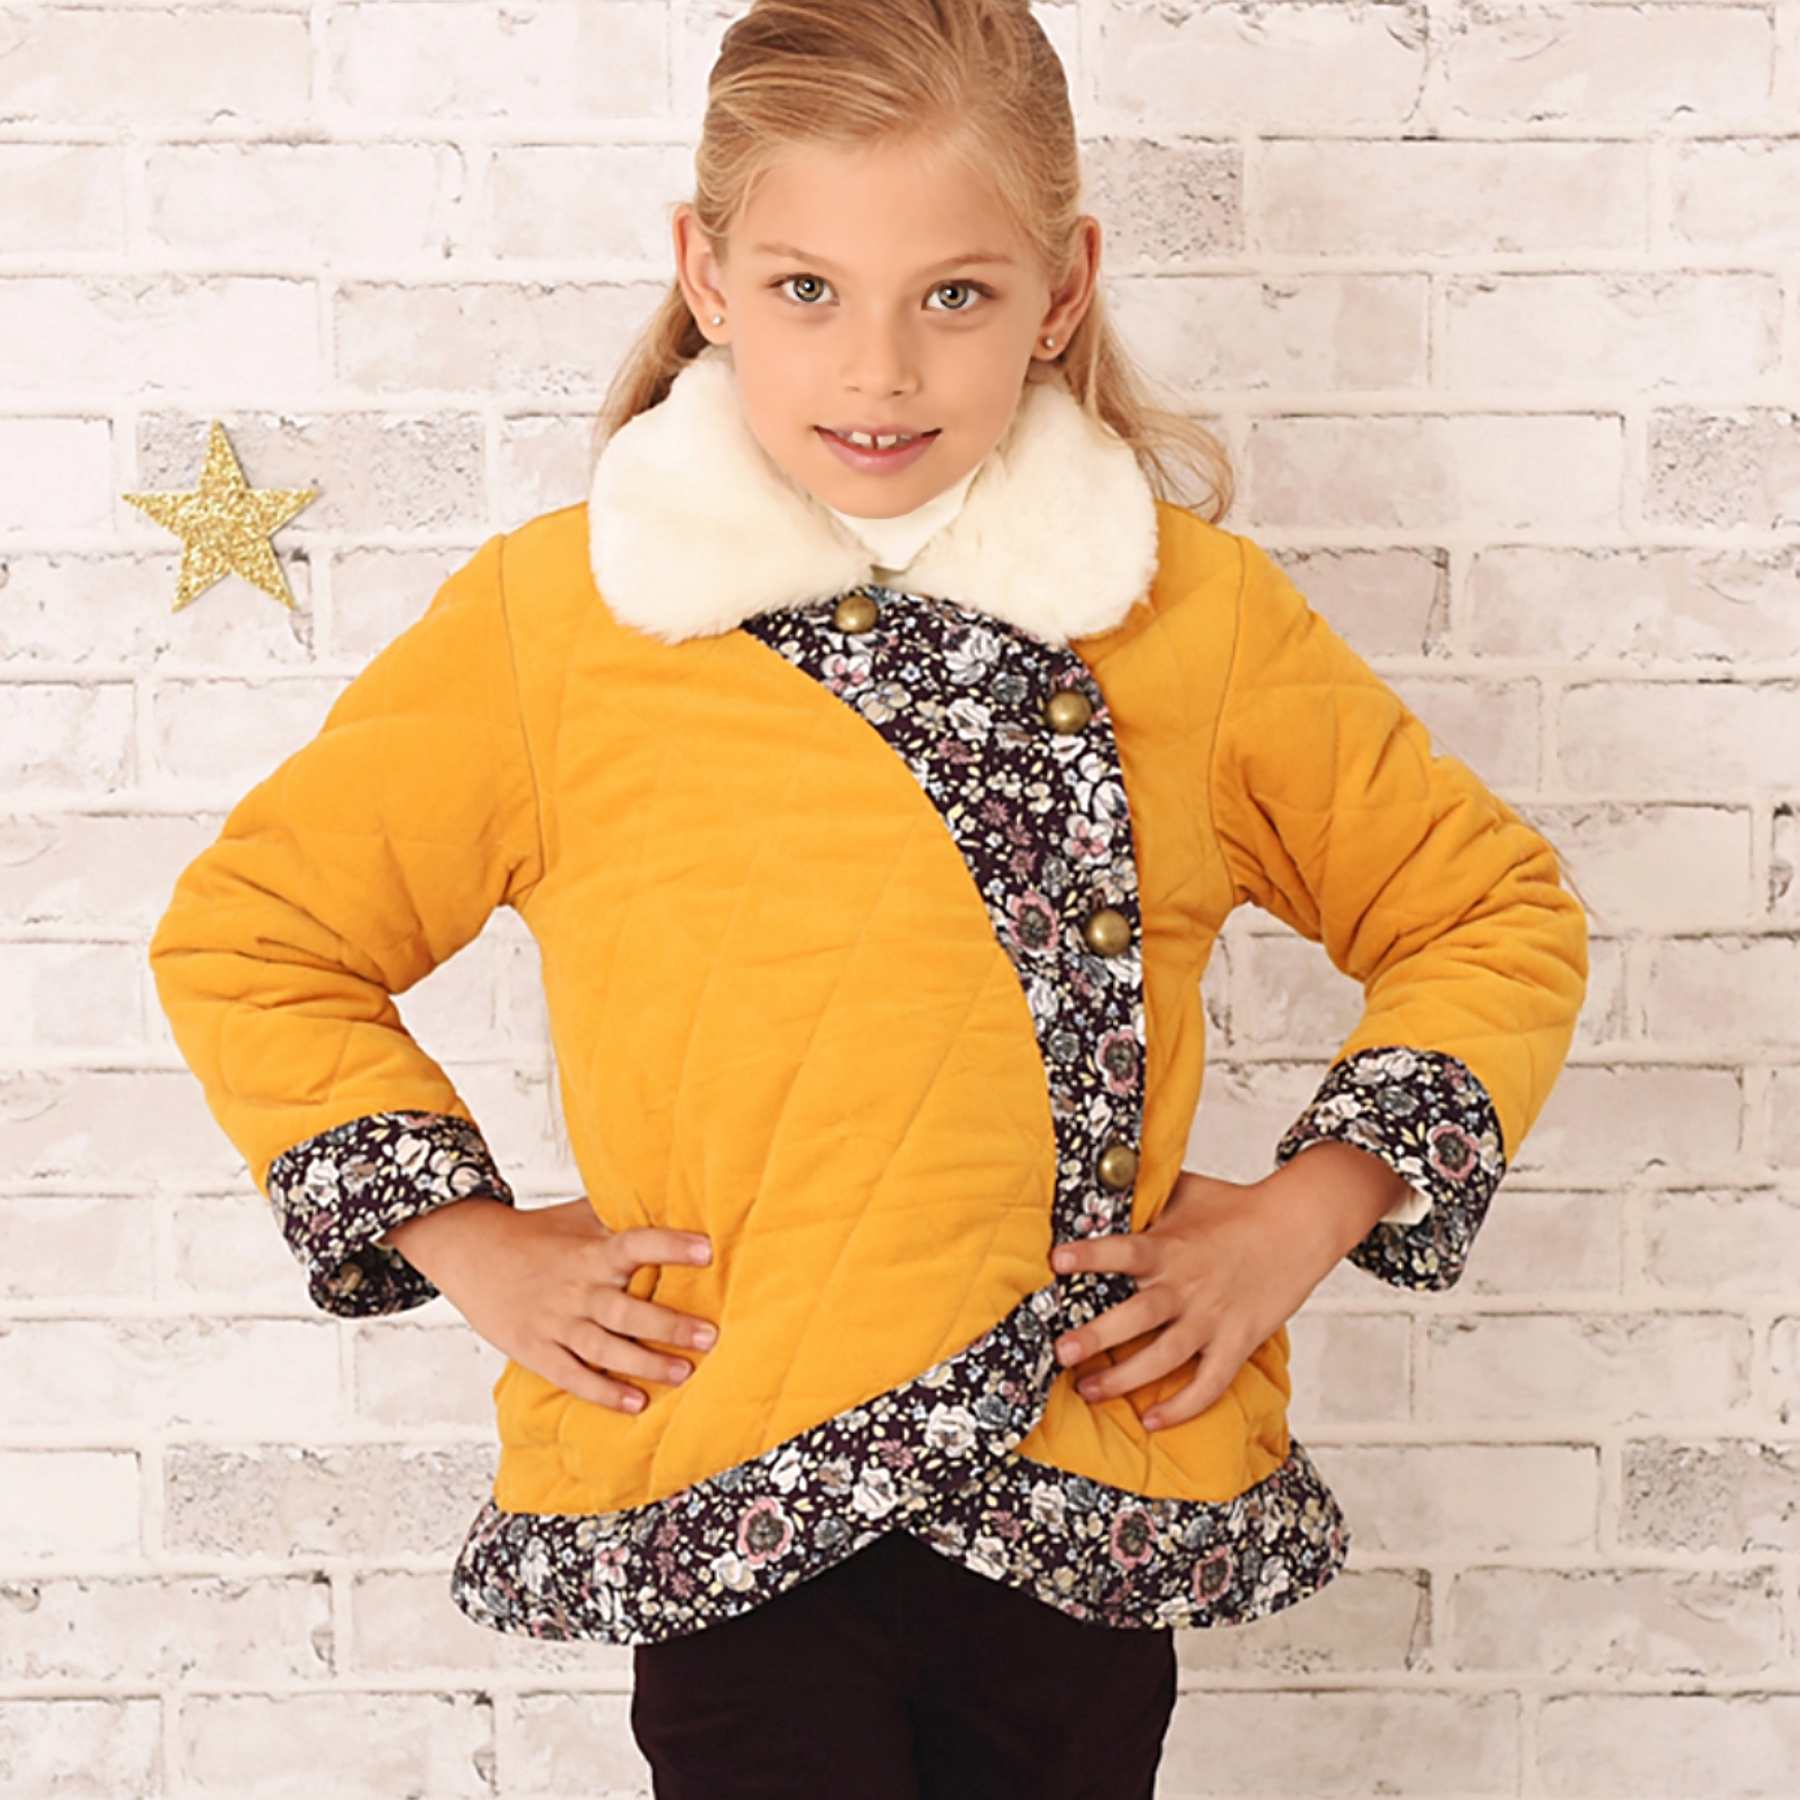 Manteau style kimono en velours jaune et col fausse fourrure beige et coton fleuri de la marque de mode pour enfant LA FAUTE A VOLTAIRE